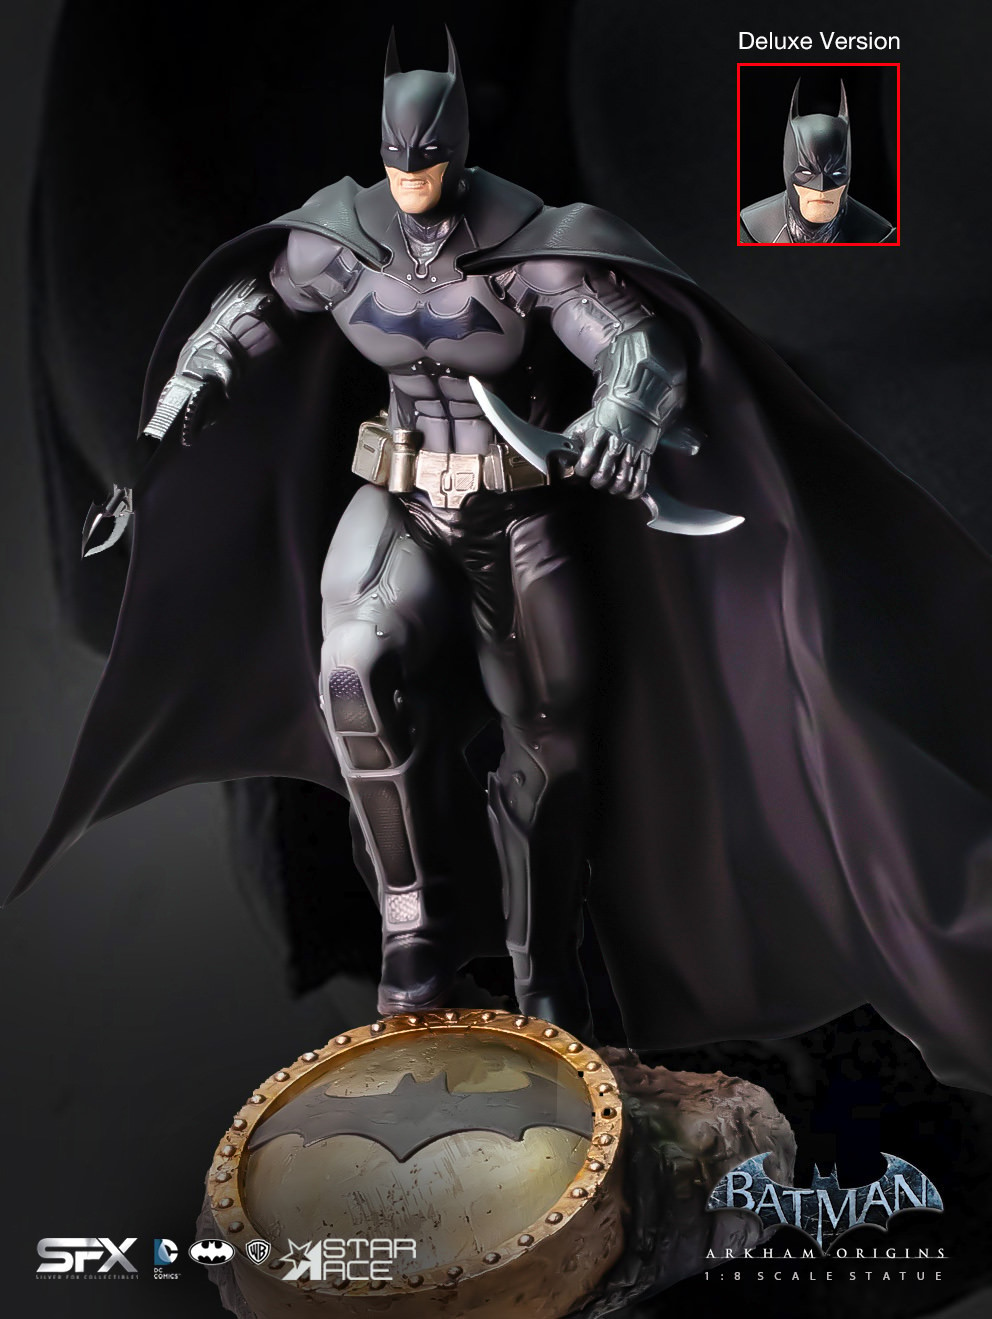 Batman Arkham Origins 2.0 Deluxe (Prototype Shown) View 11